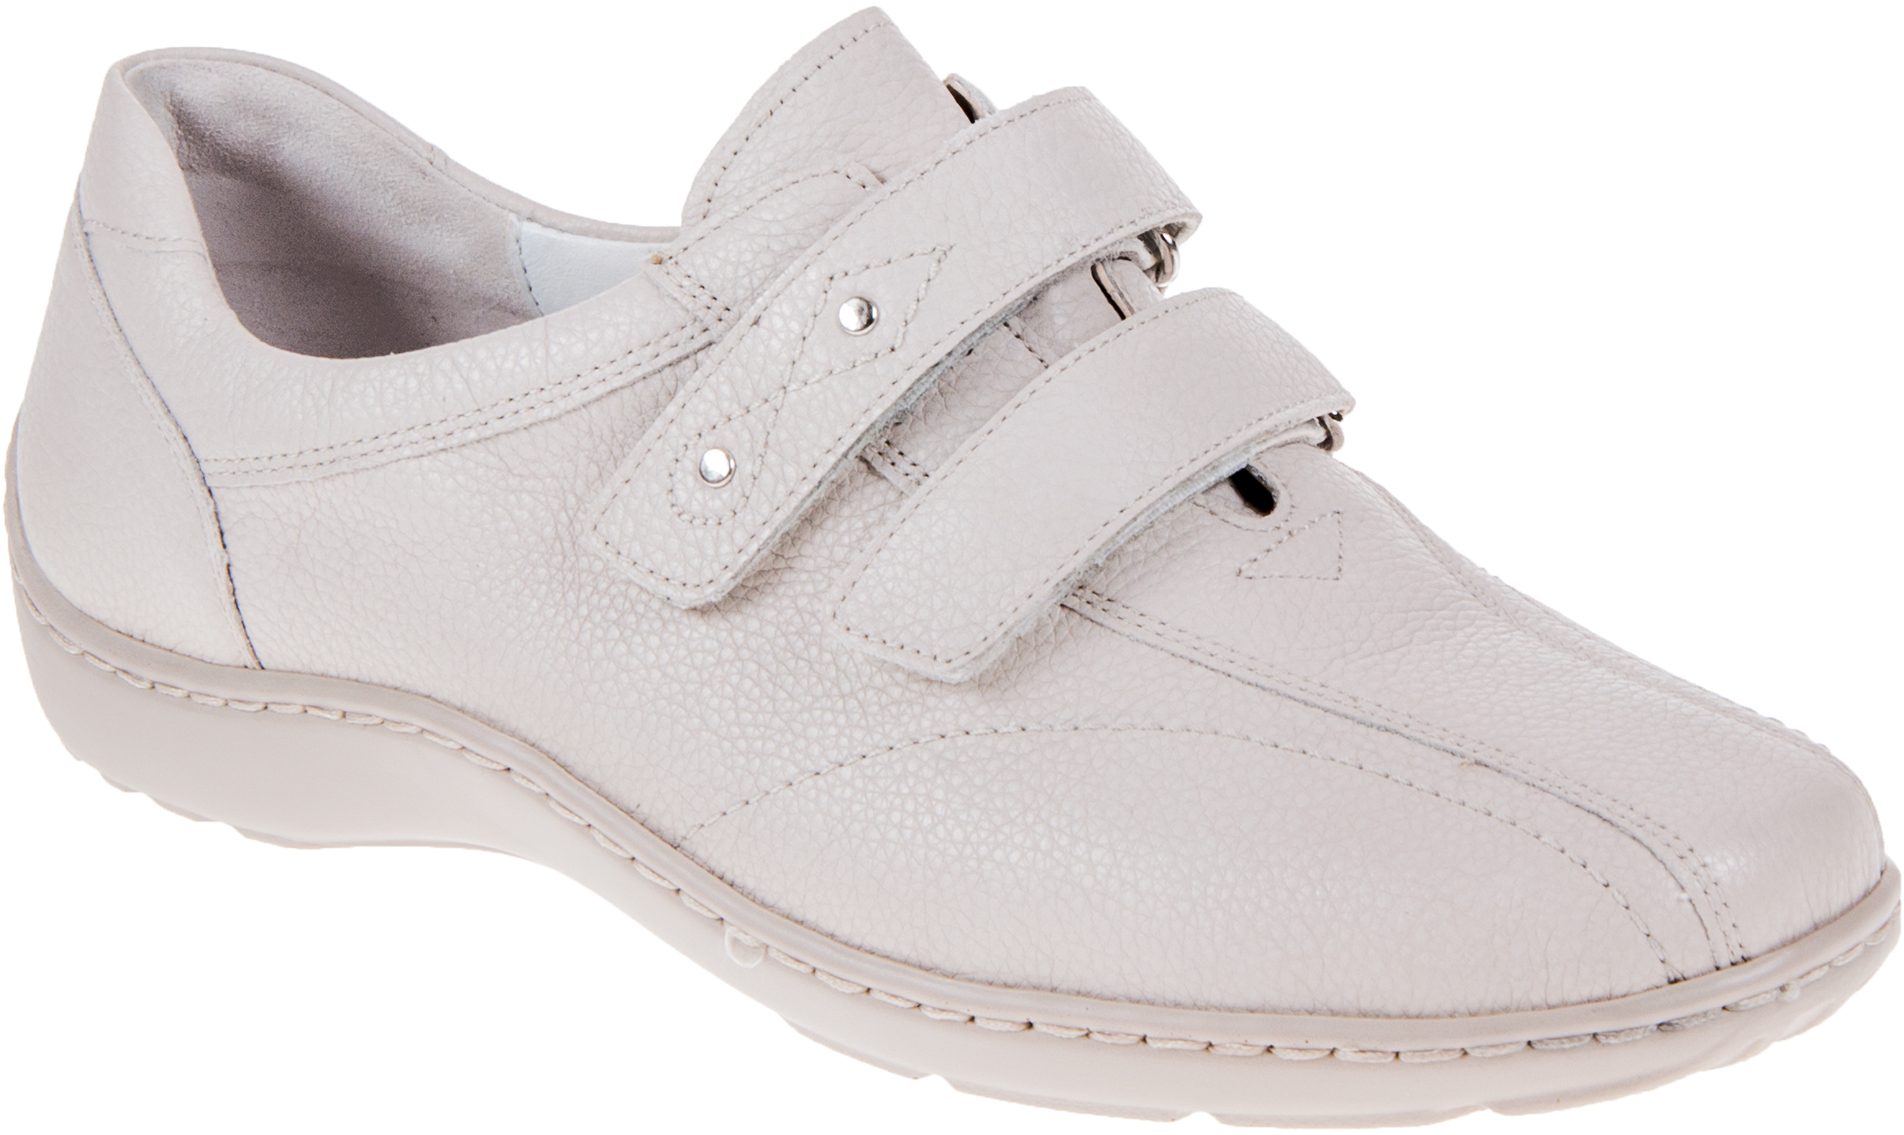 Waldlaufer Henni 301 Off White Leather 496301 172 120 - Everyday Shoes ...